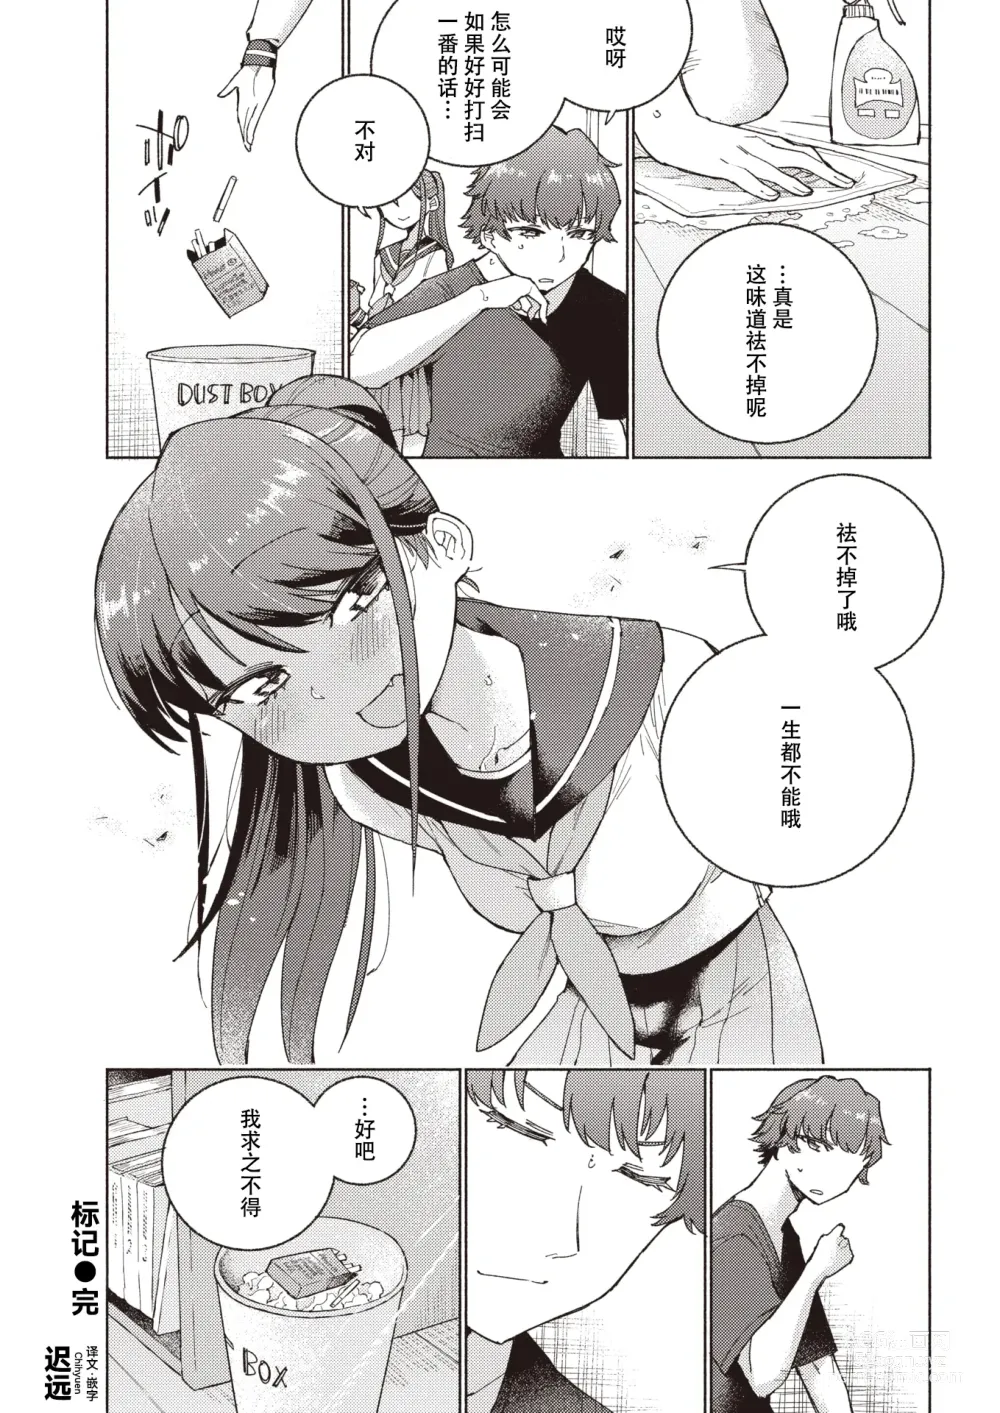 Page 26 of manga 标记